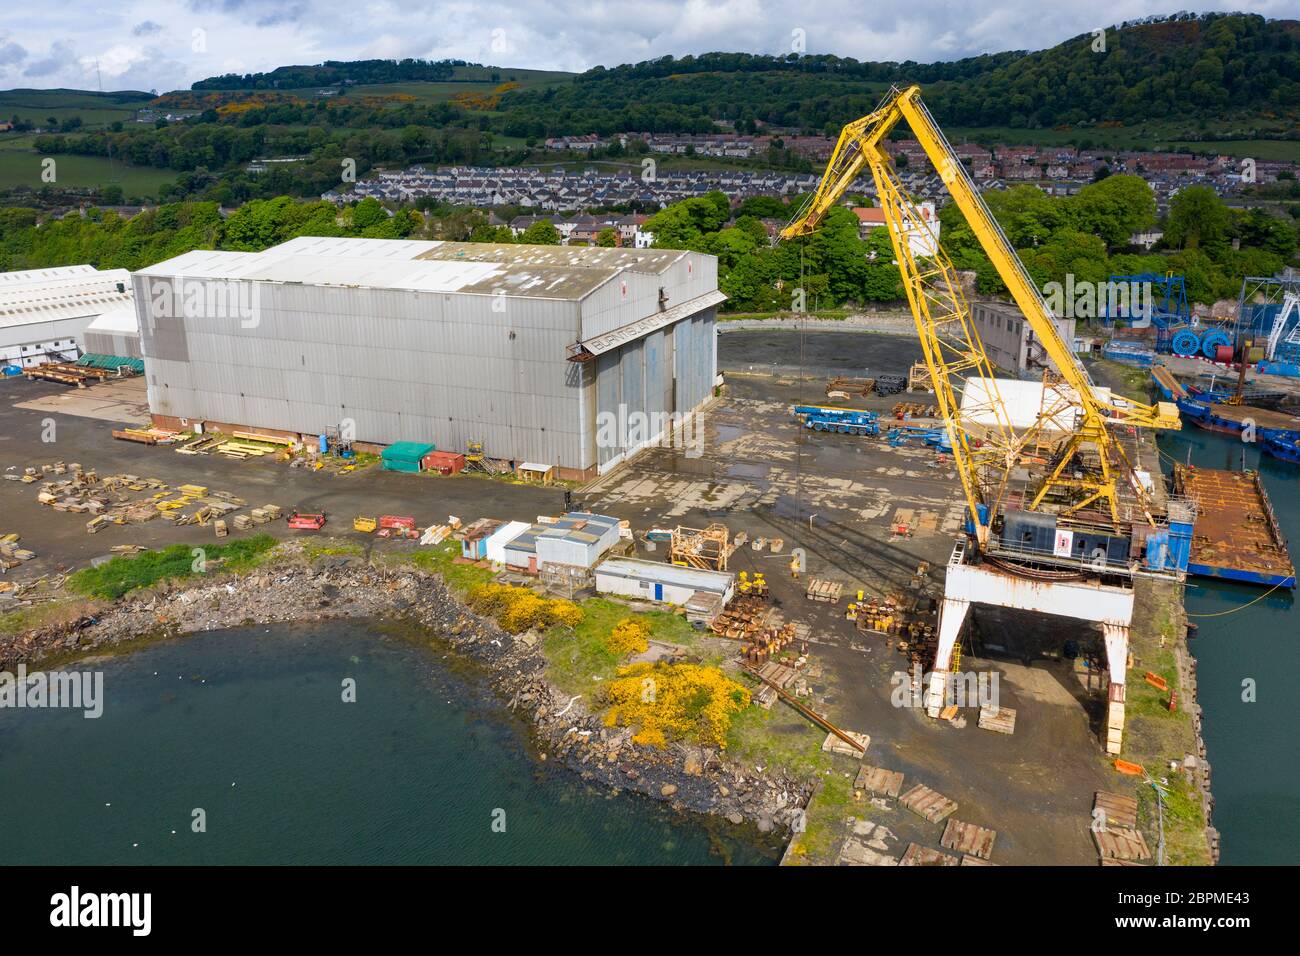 Vista aerea del cantiere Burntisland Fabrications Ltd (BiFab) a Burntisland a Fife, Scozia, Regno Unito Foto Stock